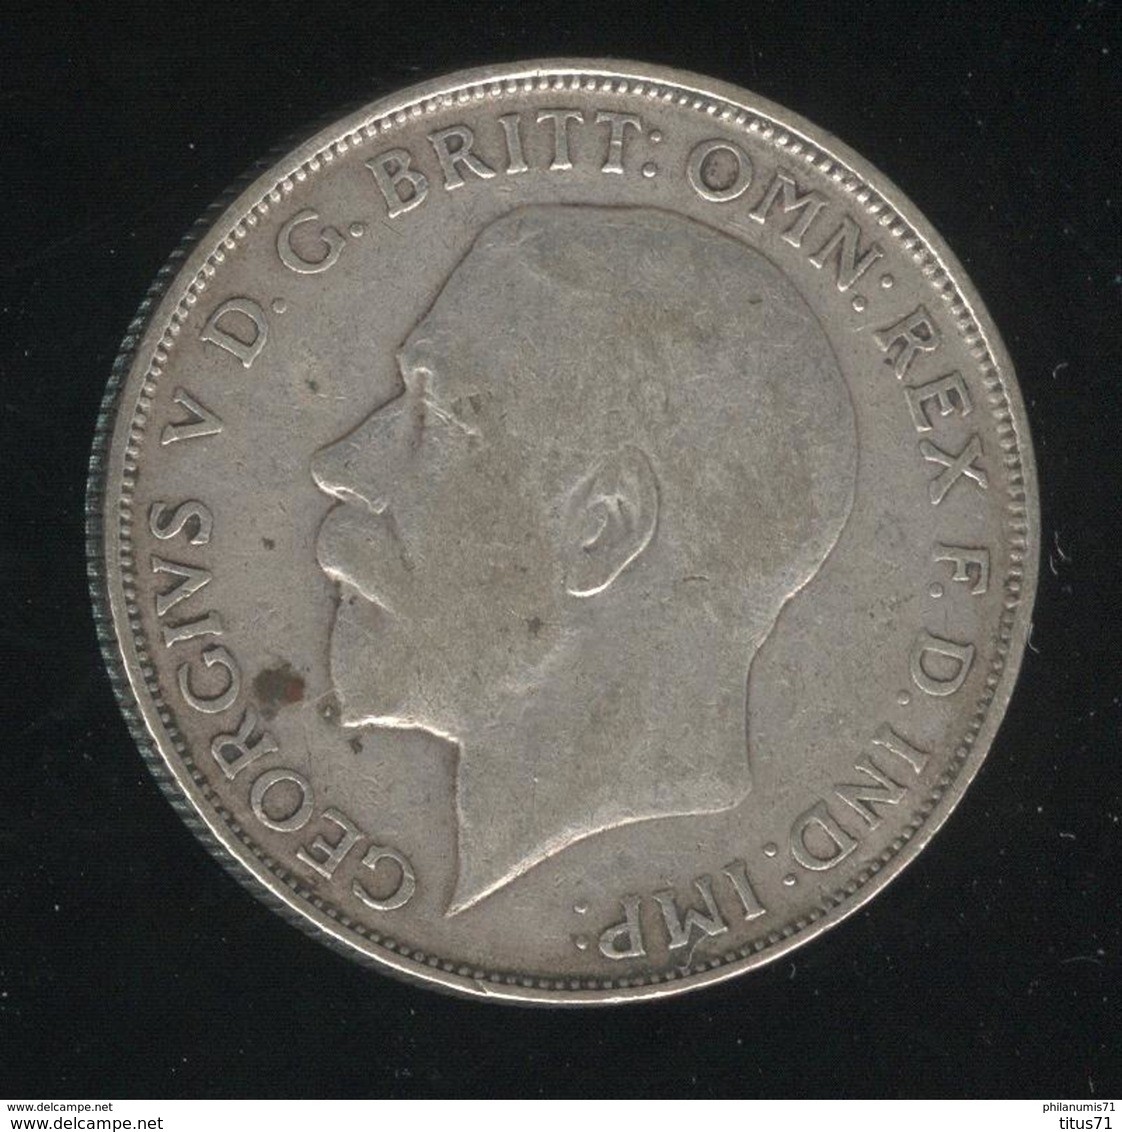 1 Florin Grande Bretagne / United Kingdom 1923 TTB - J. 1 Florin / 2 Shillings